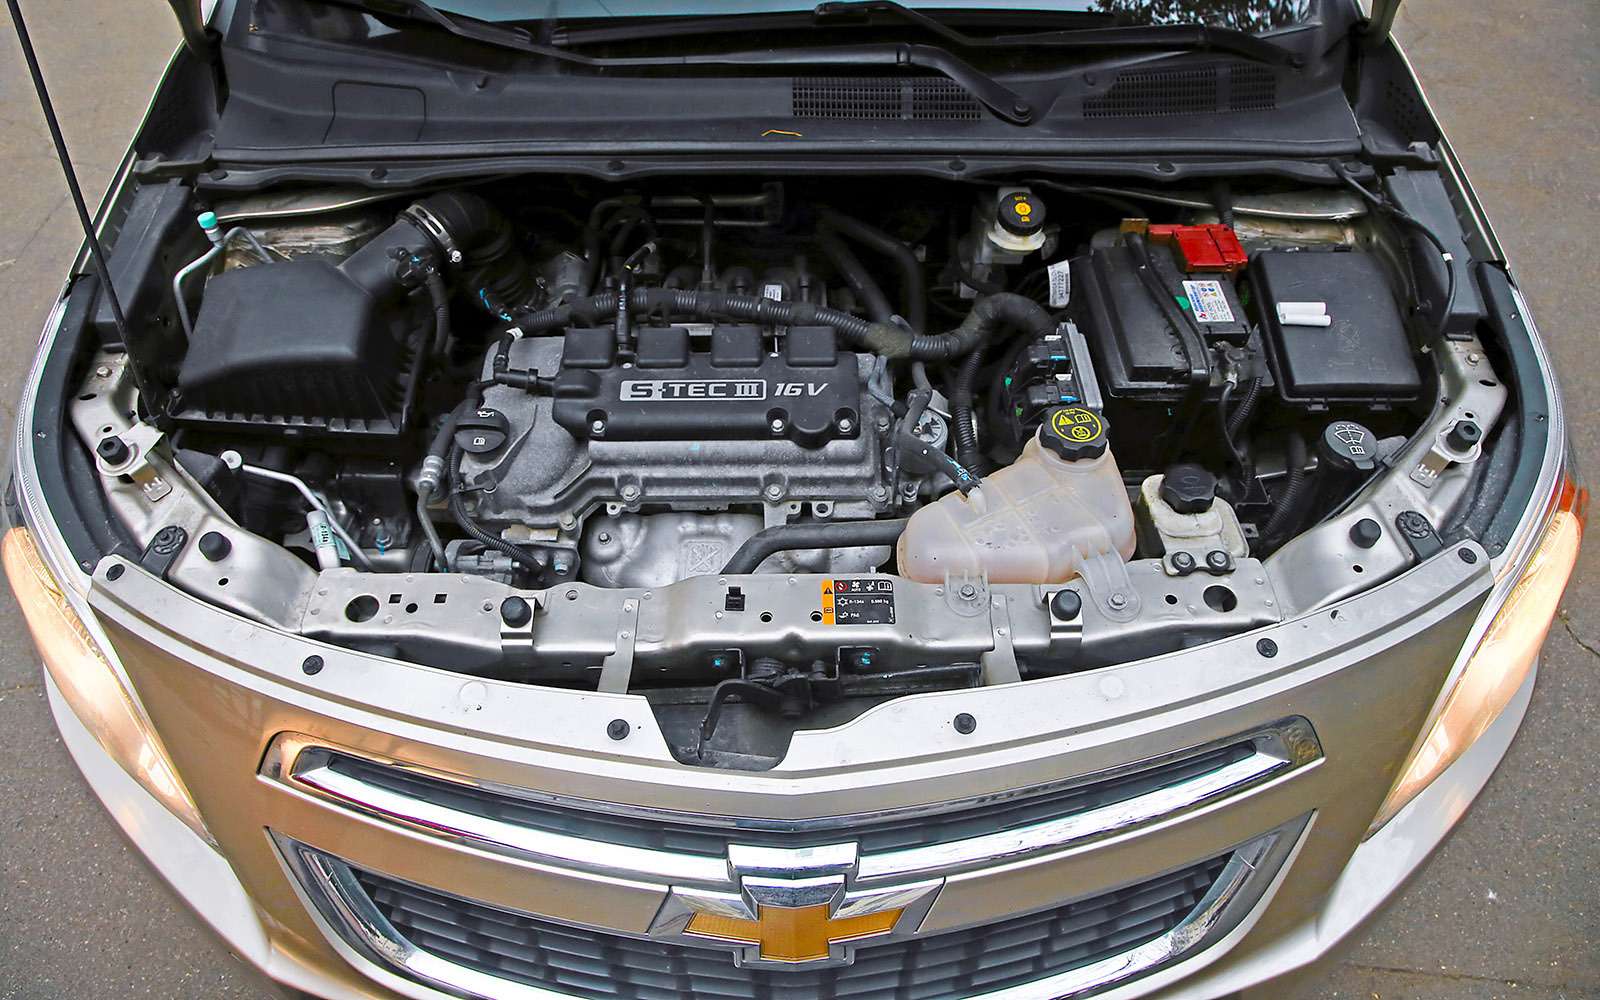 Chevrolet Cobalt после 68 тыс. км: дневник домового — фото 670420